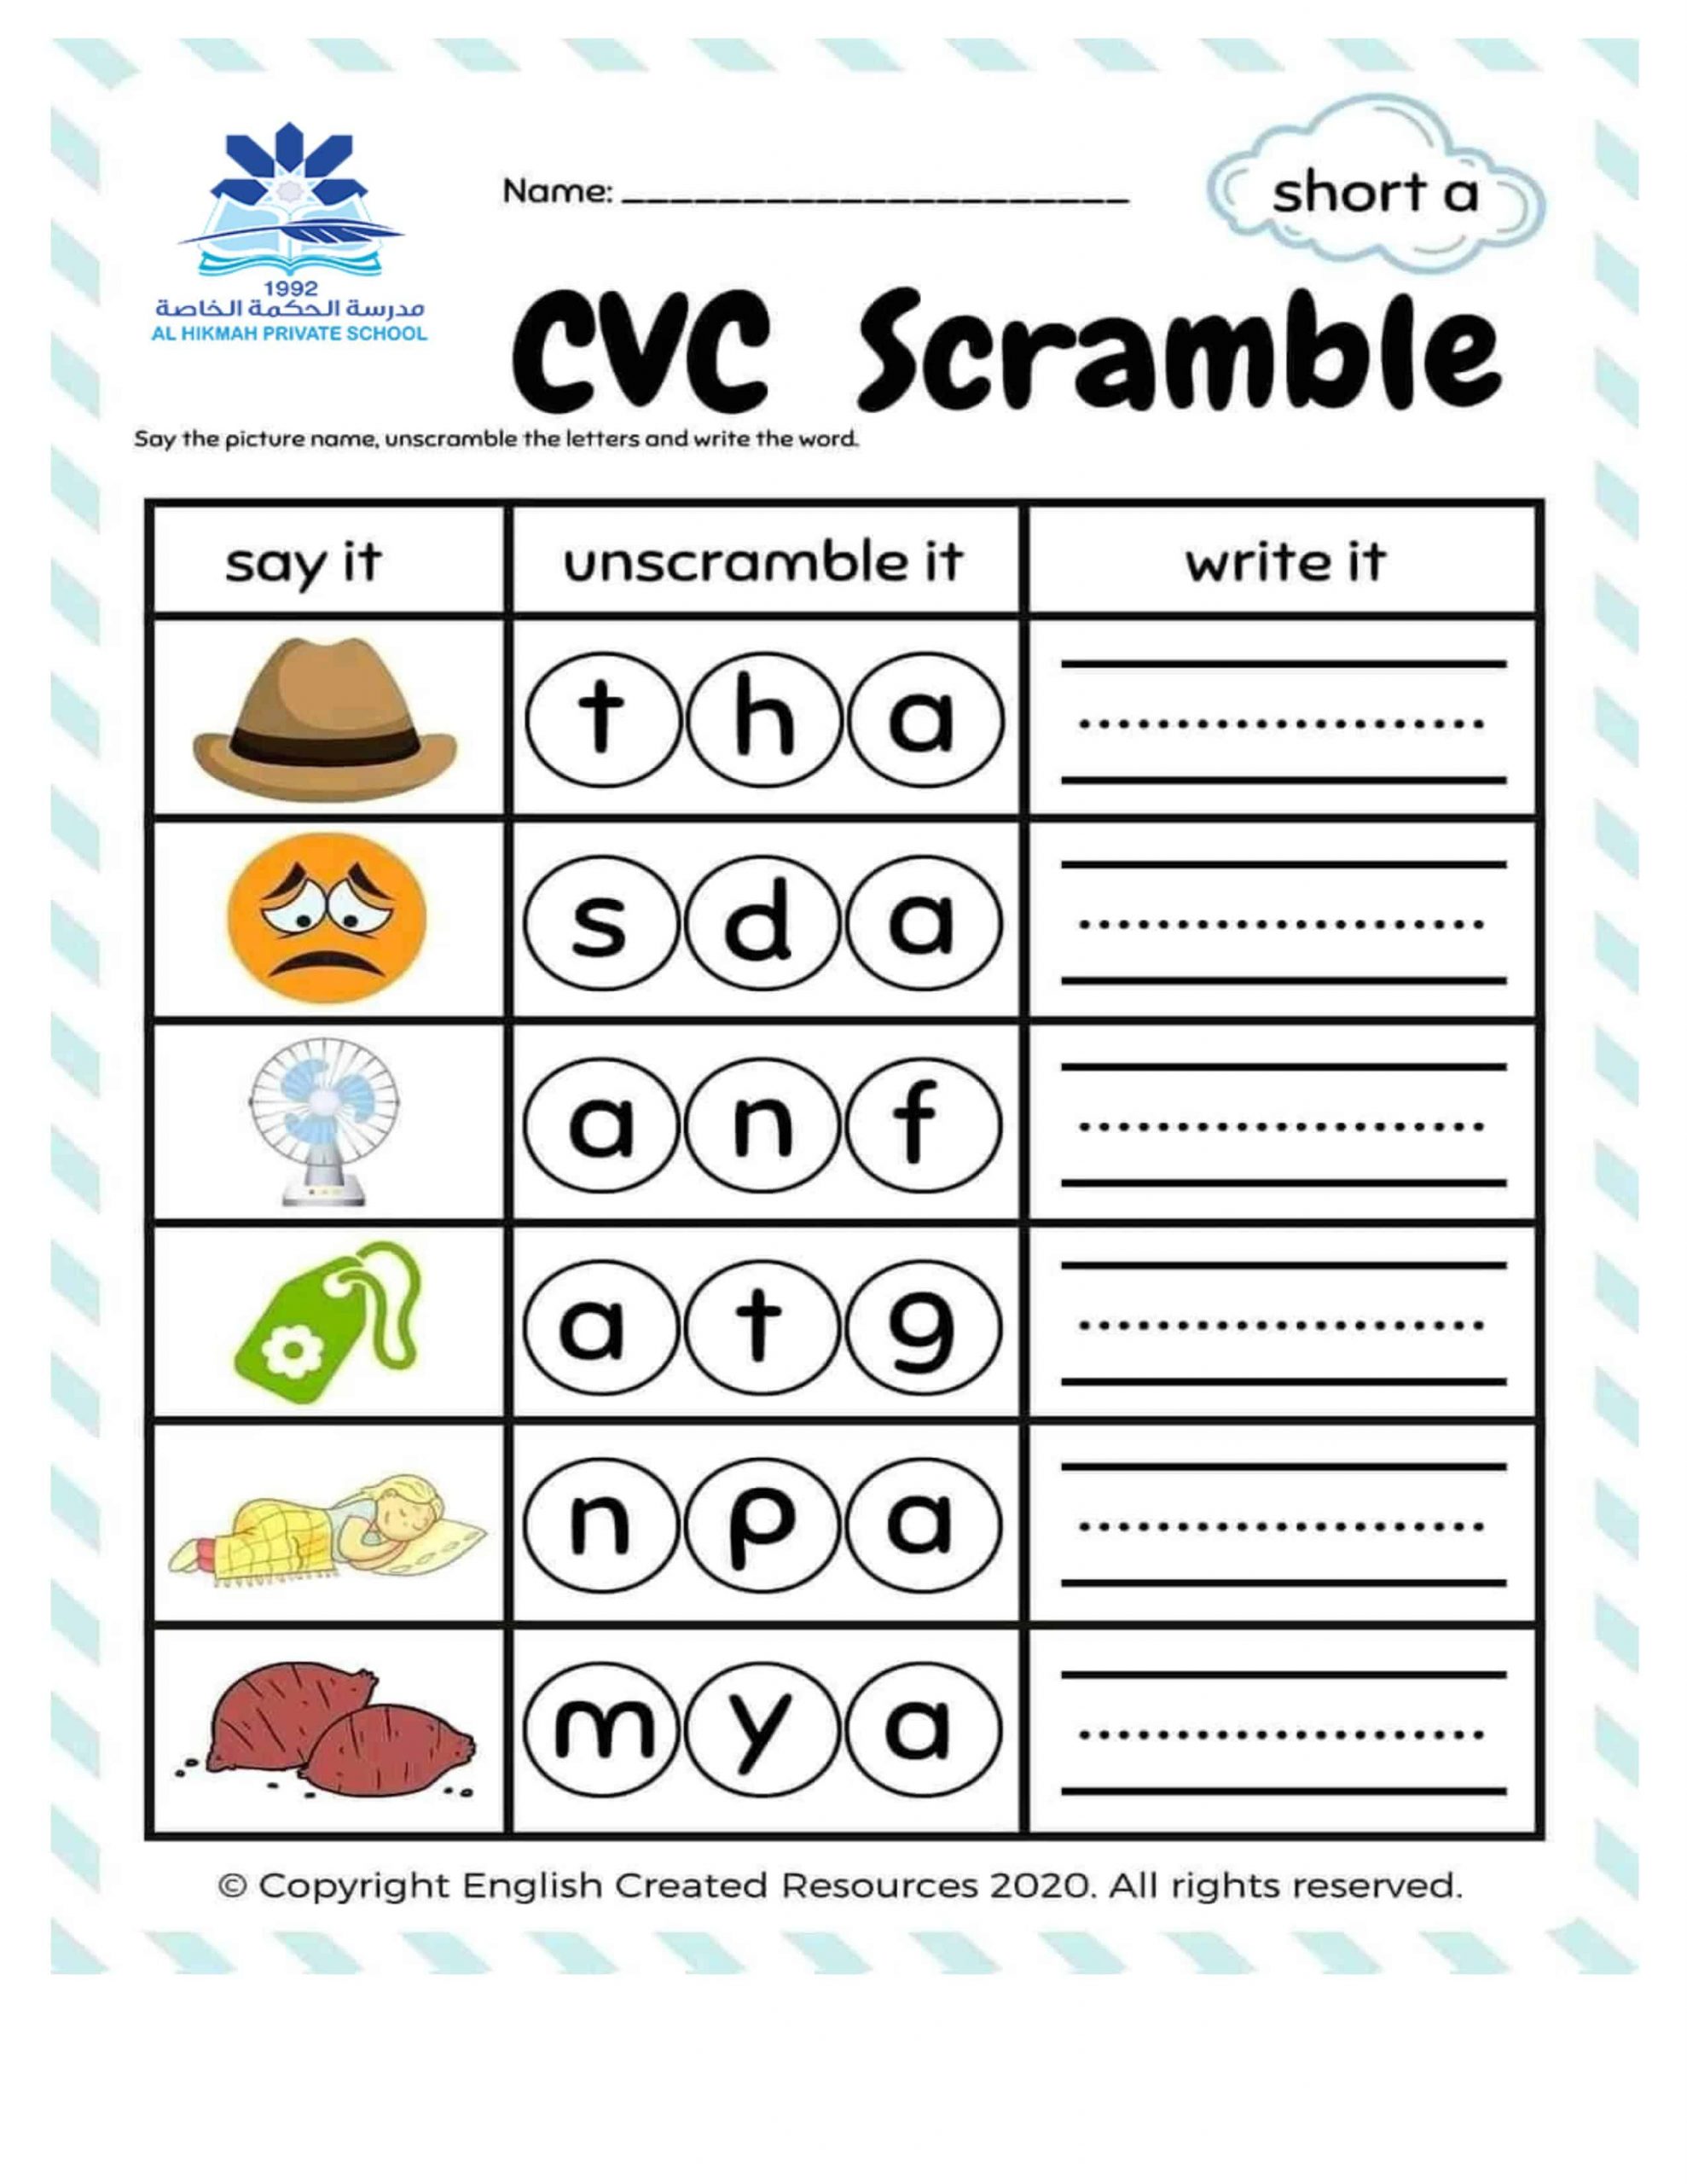 ورقة عمل CVC Scramble Short a الصف الأول مادة اللغة الإنجليزية